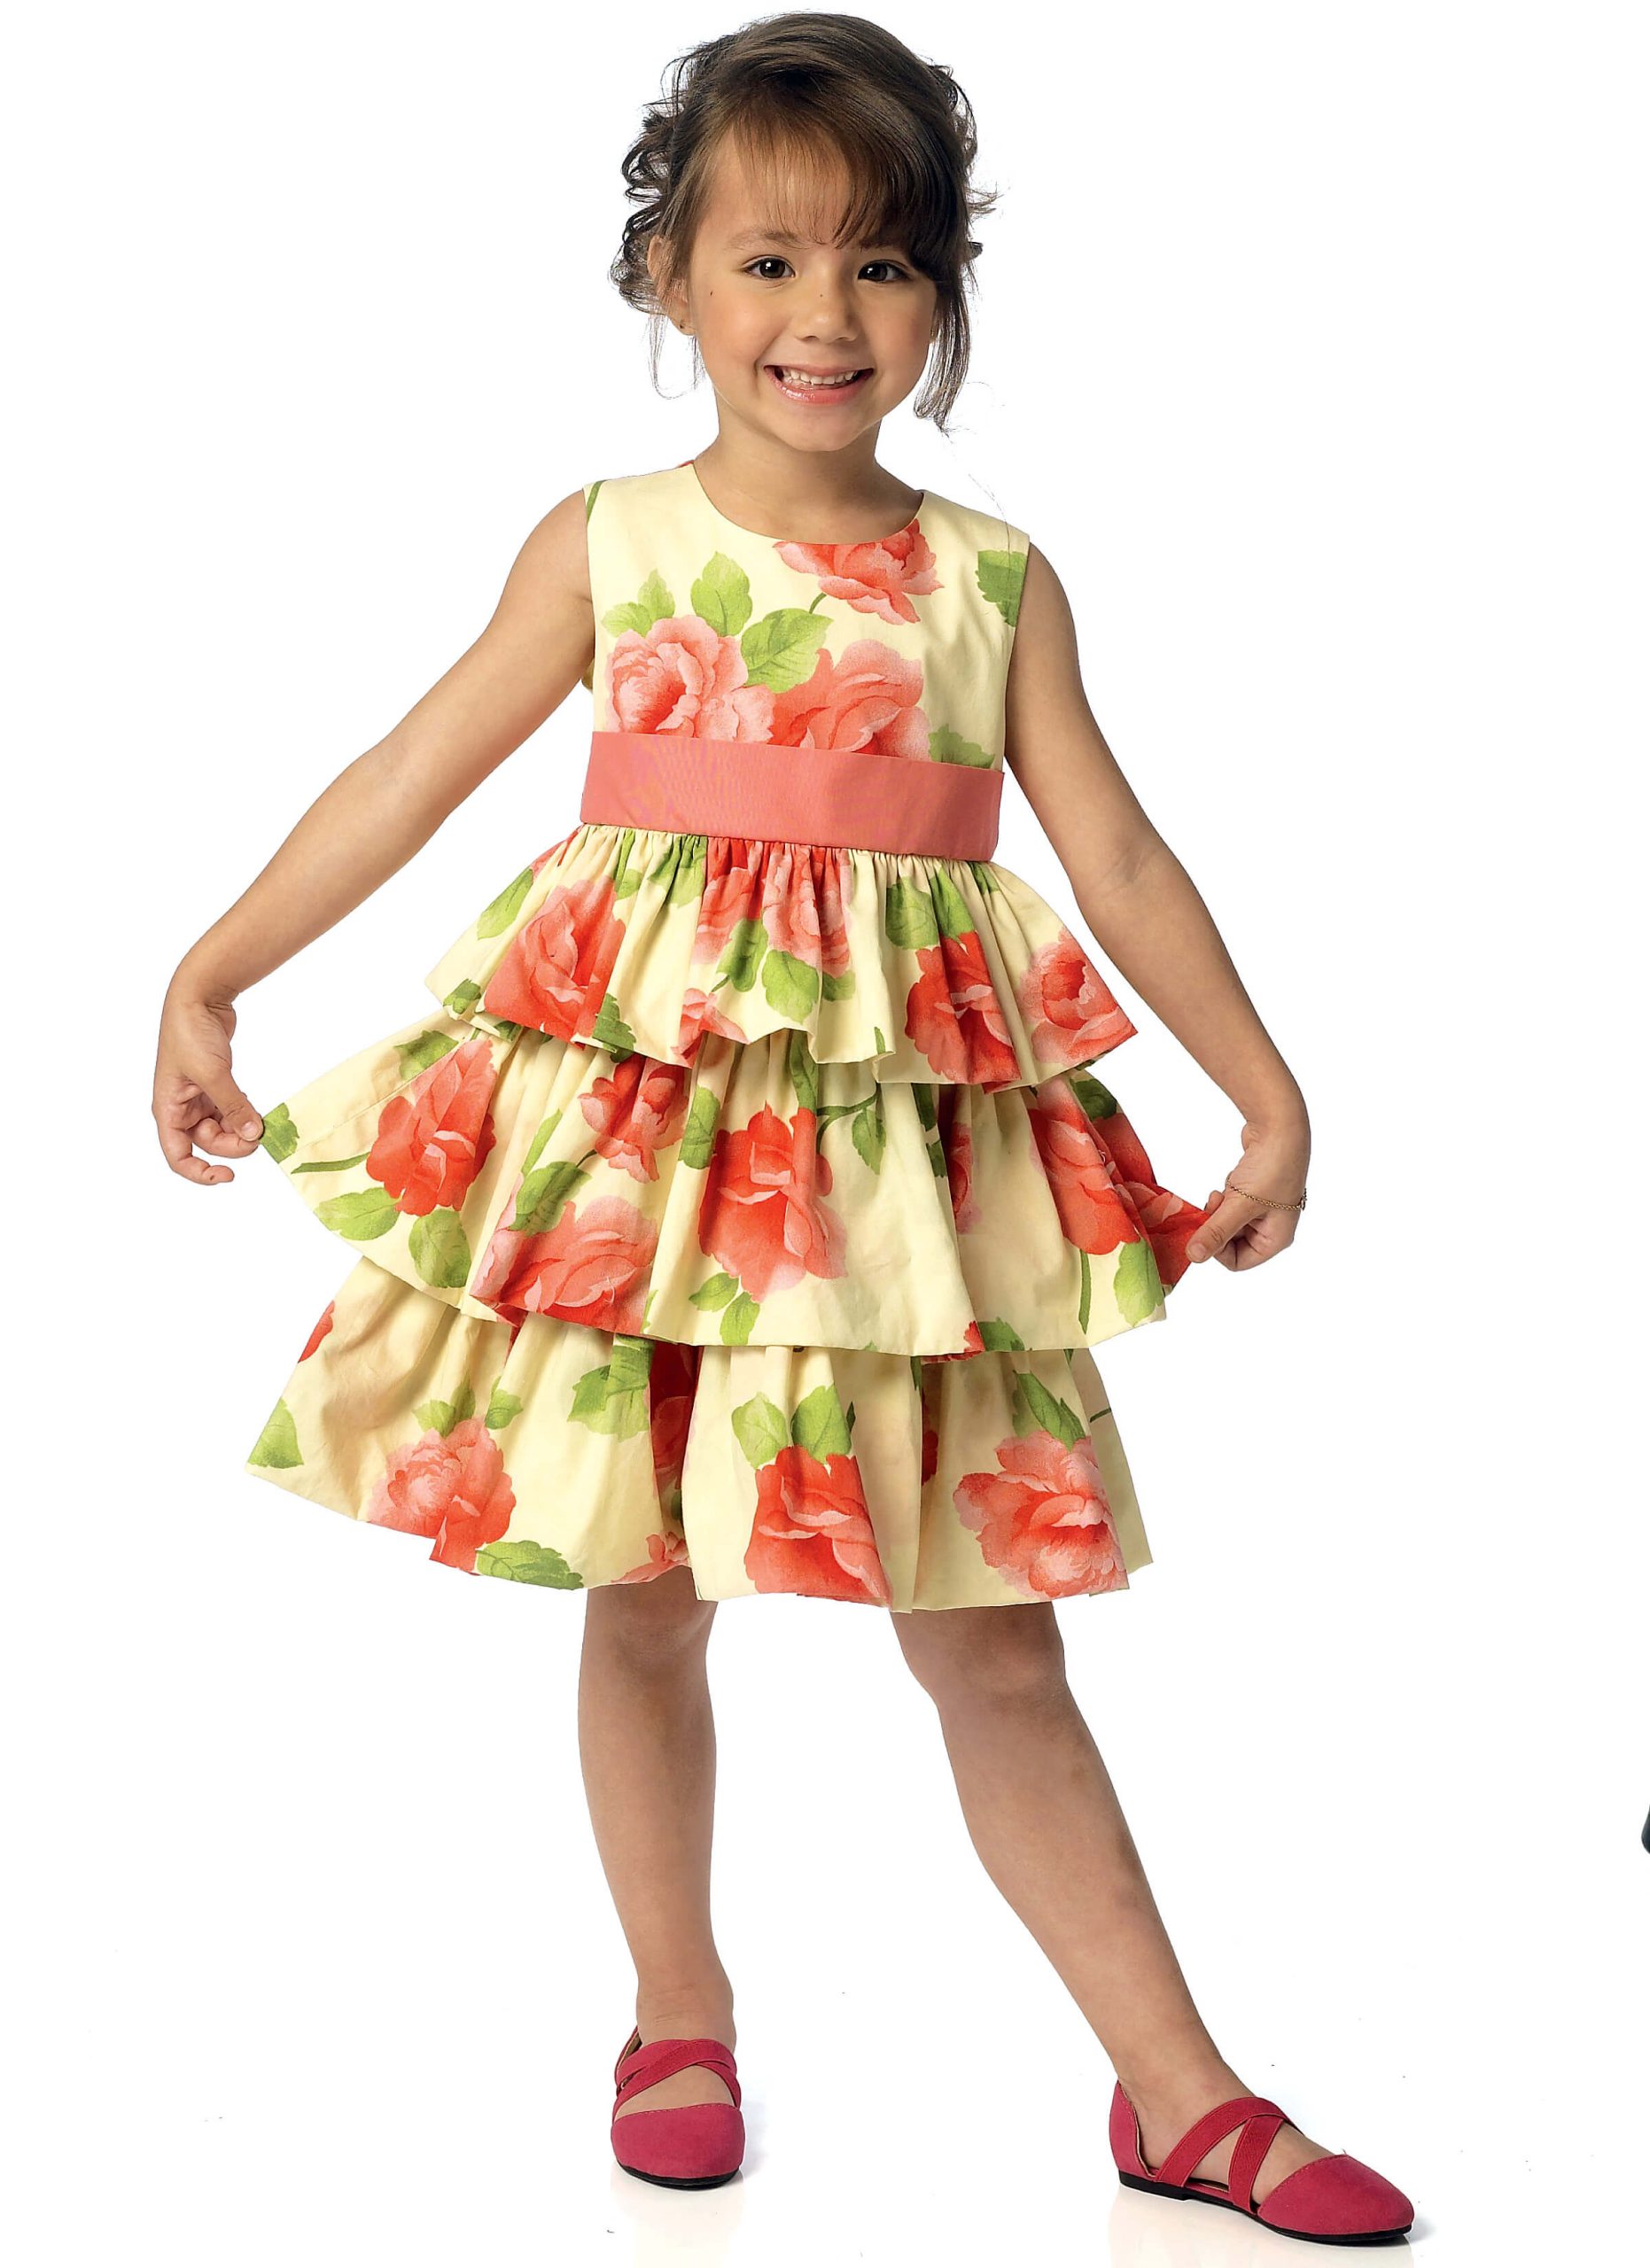 Butterick Sewing Pattern B6161 Children's/Girls' Dress